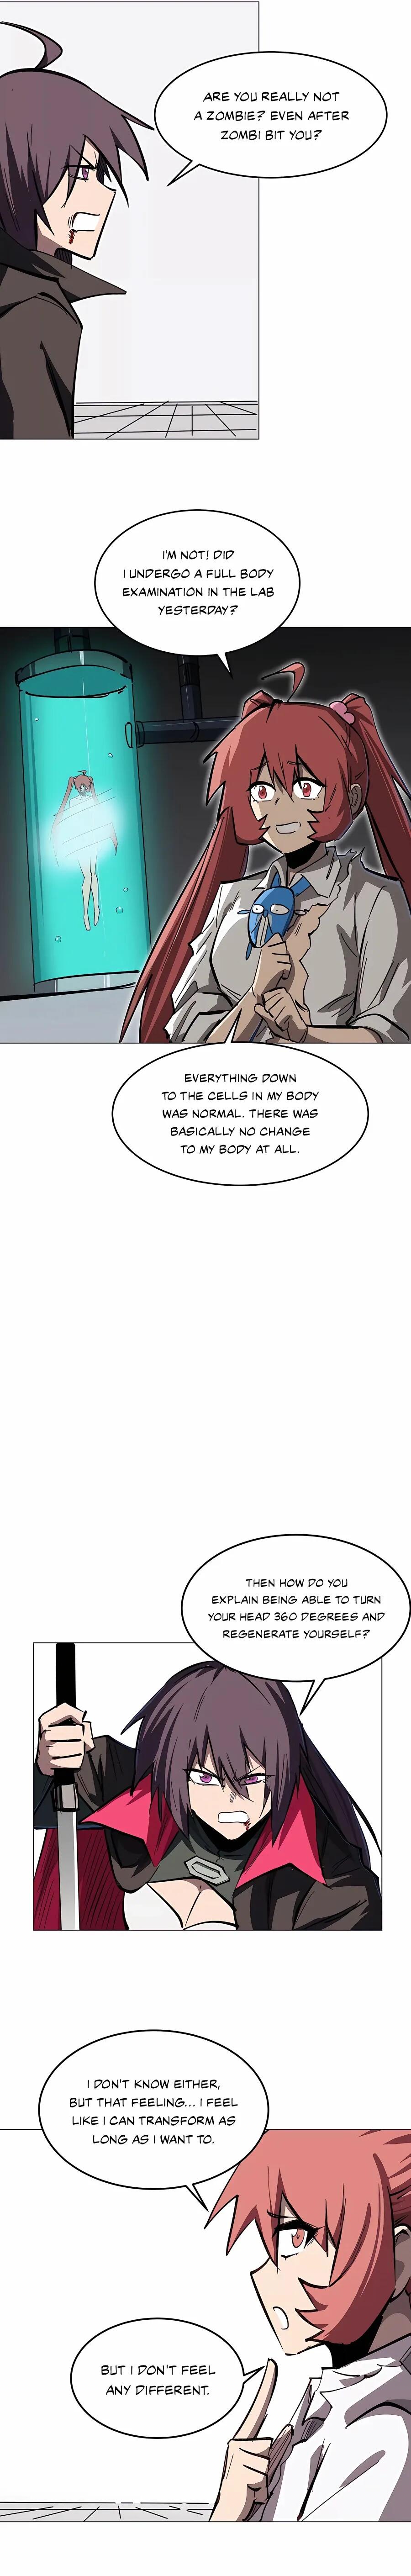 Mr. Zombie Chapter 35 page 10 - Mangakakalot